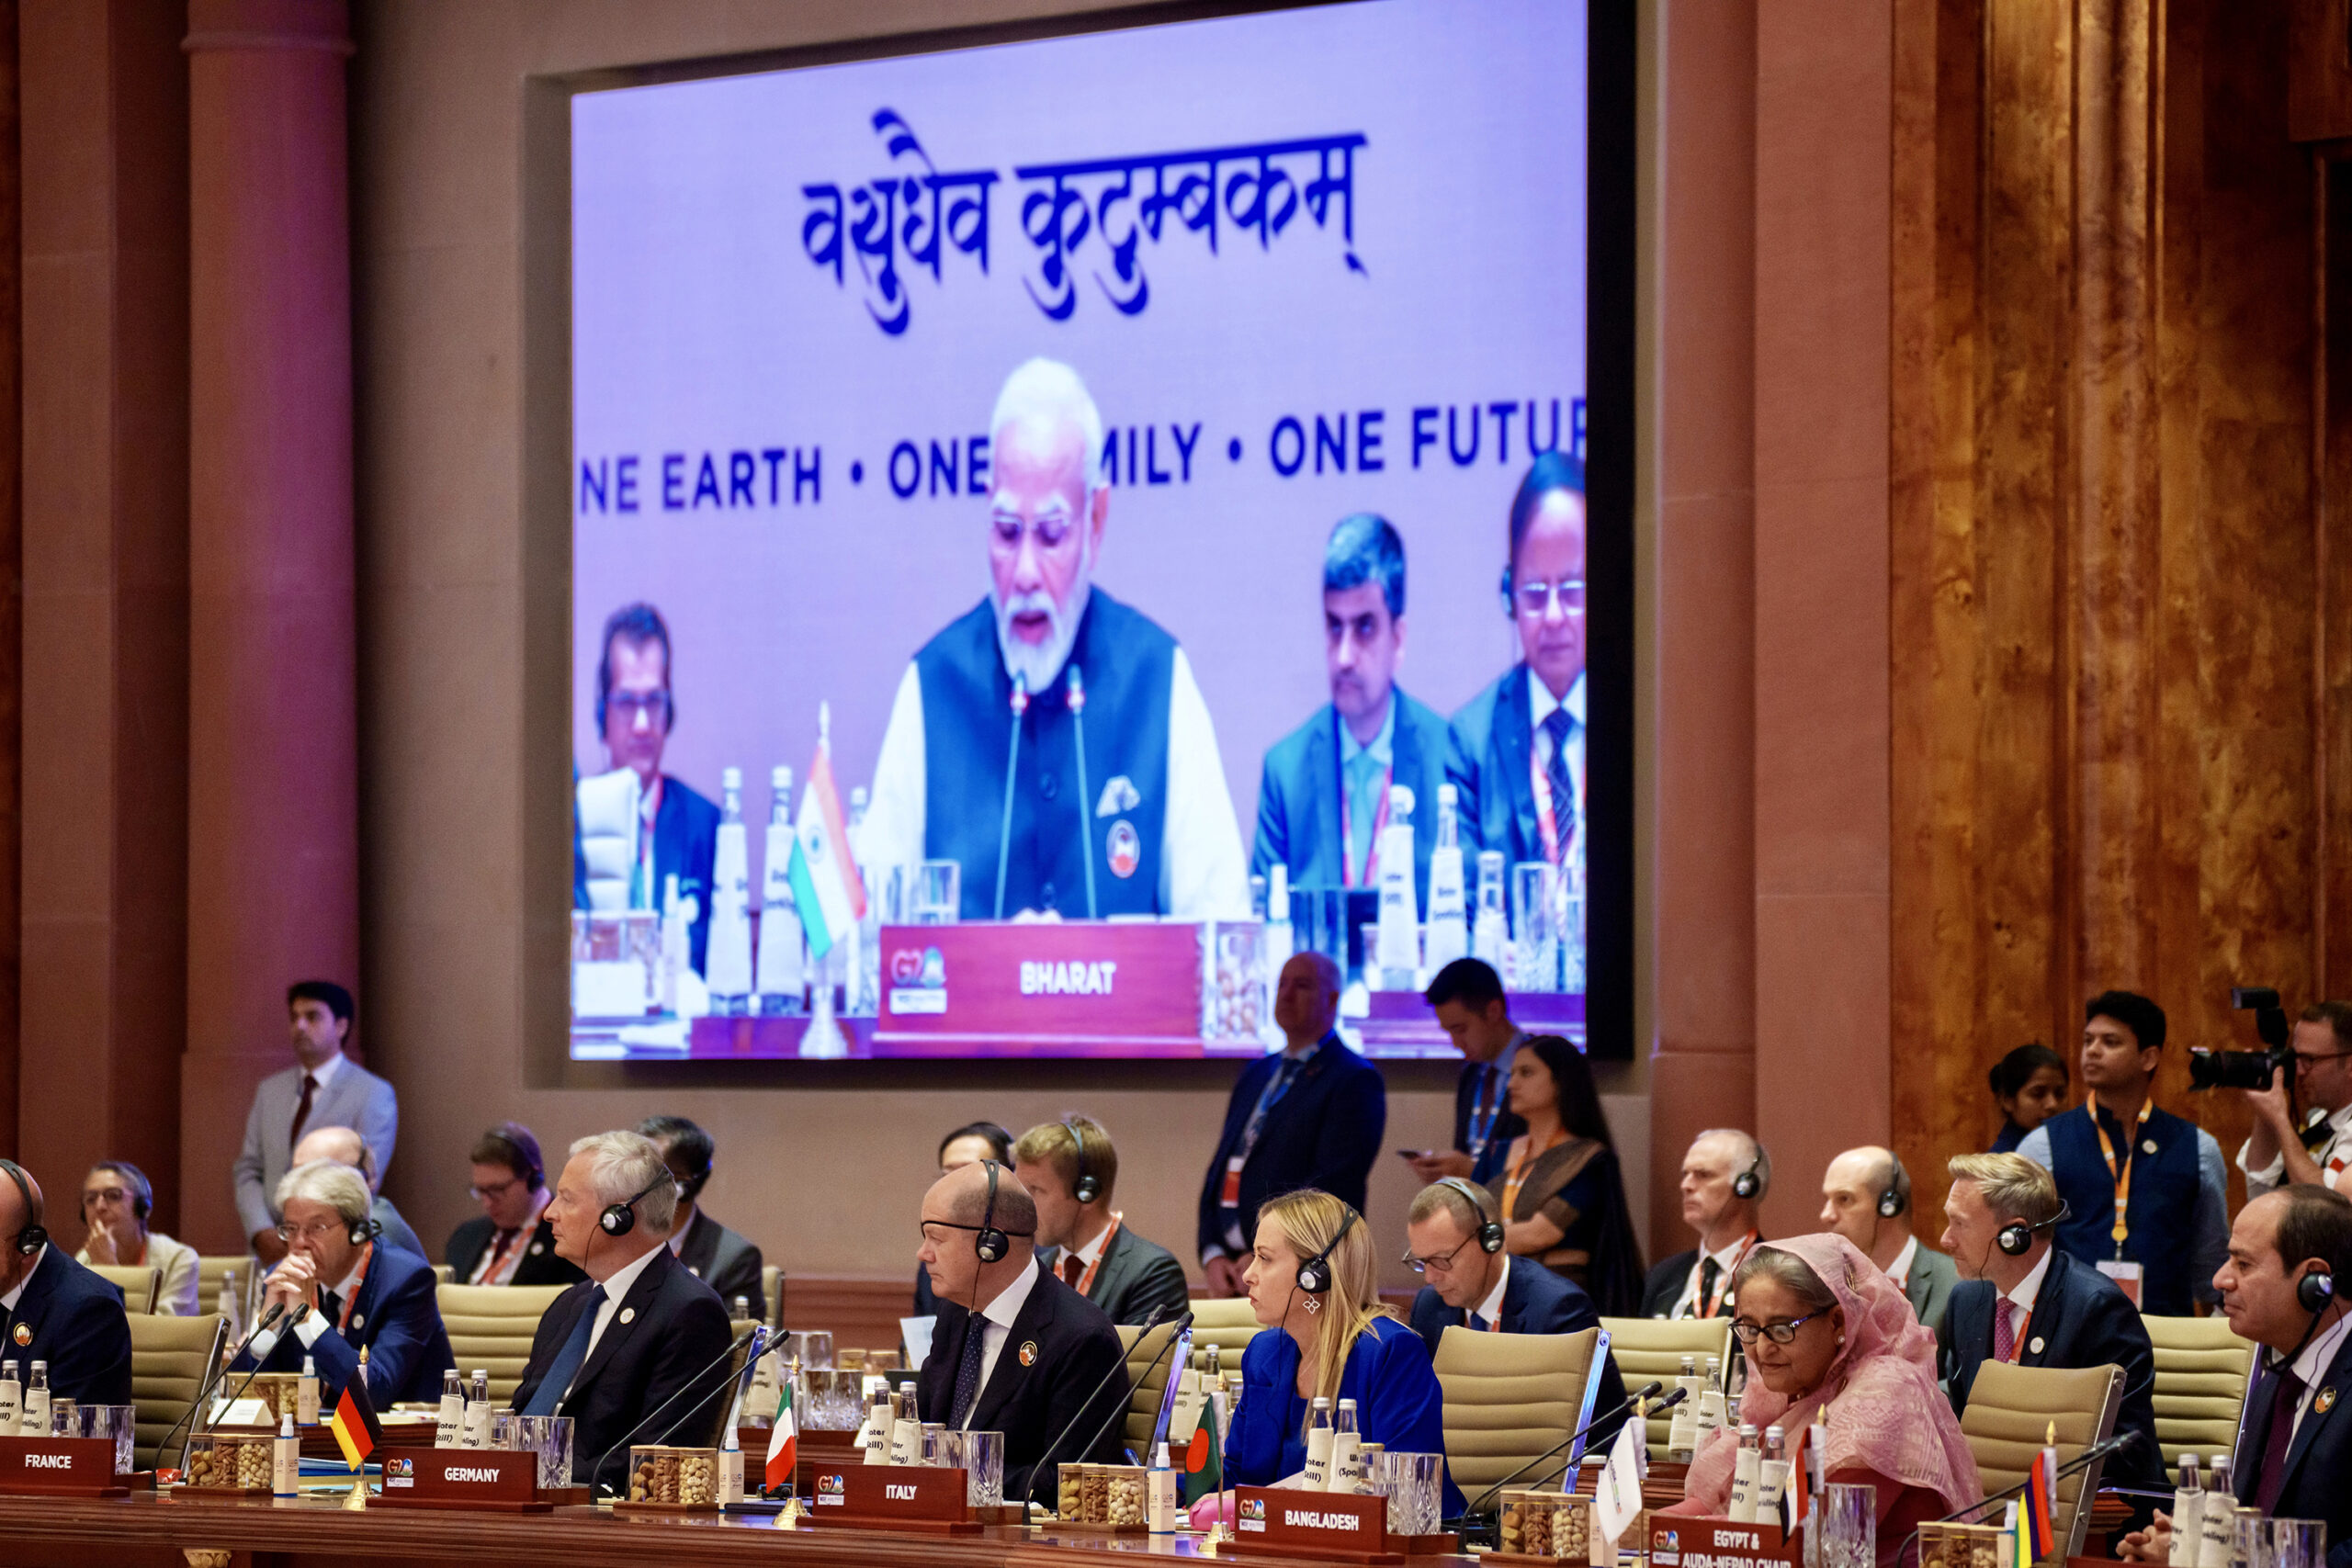 Si è concluso ieri il G20 di Nuova Delhi. Ultimo atto ufficiale la pubblicazione delle dichiarazioni finali, testo derivante da complessi accordi su clima, energia, sicurezza alimentare, empowerment femminile, salute, intelligenza artificiale e digitalizzazione.